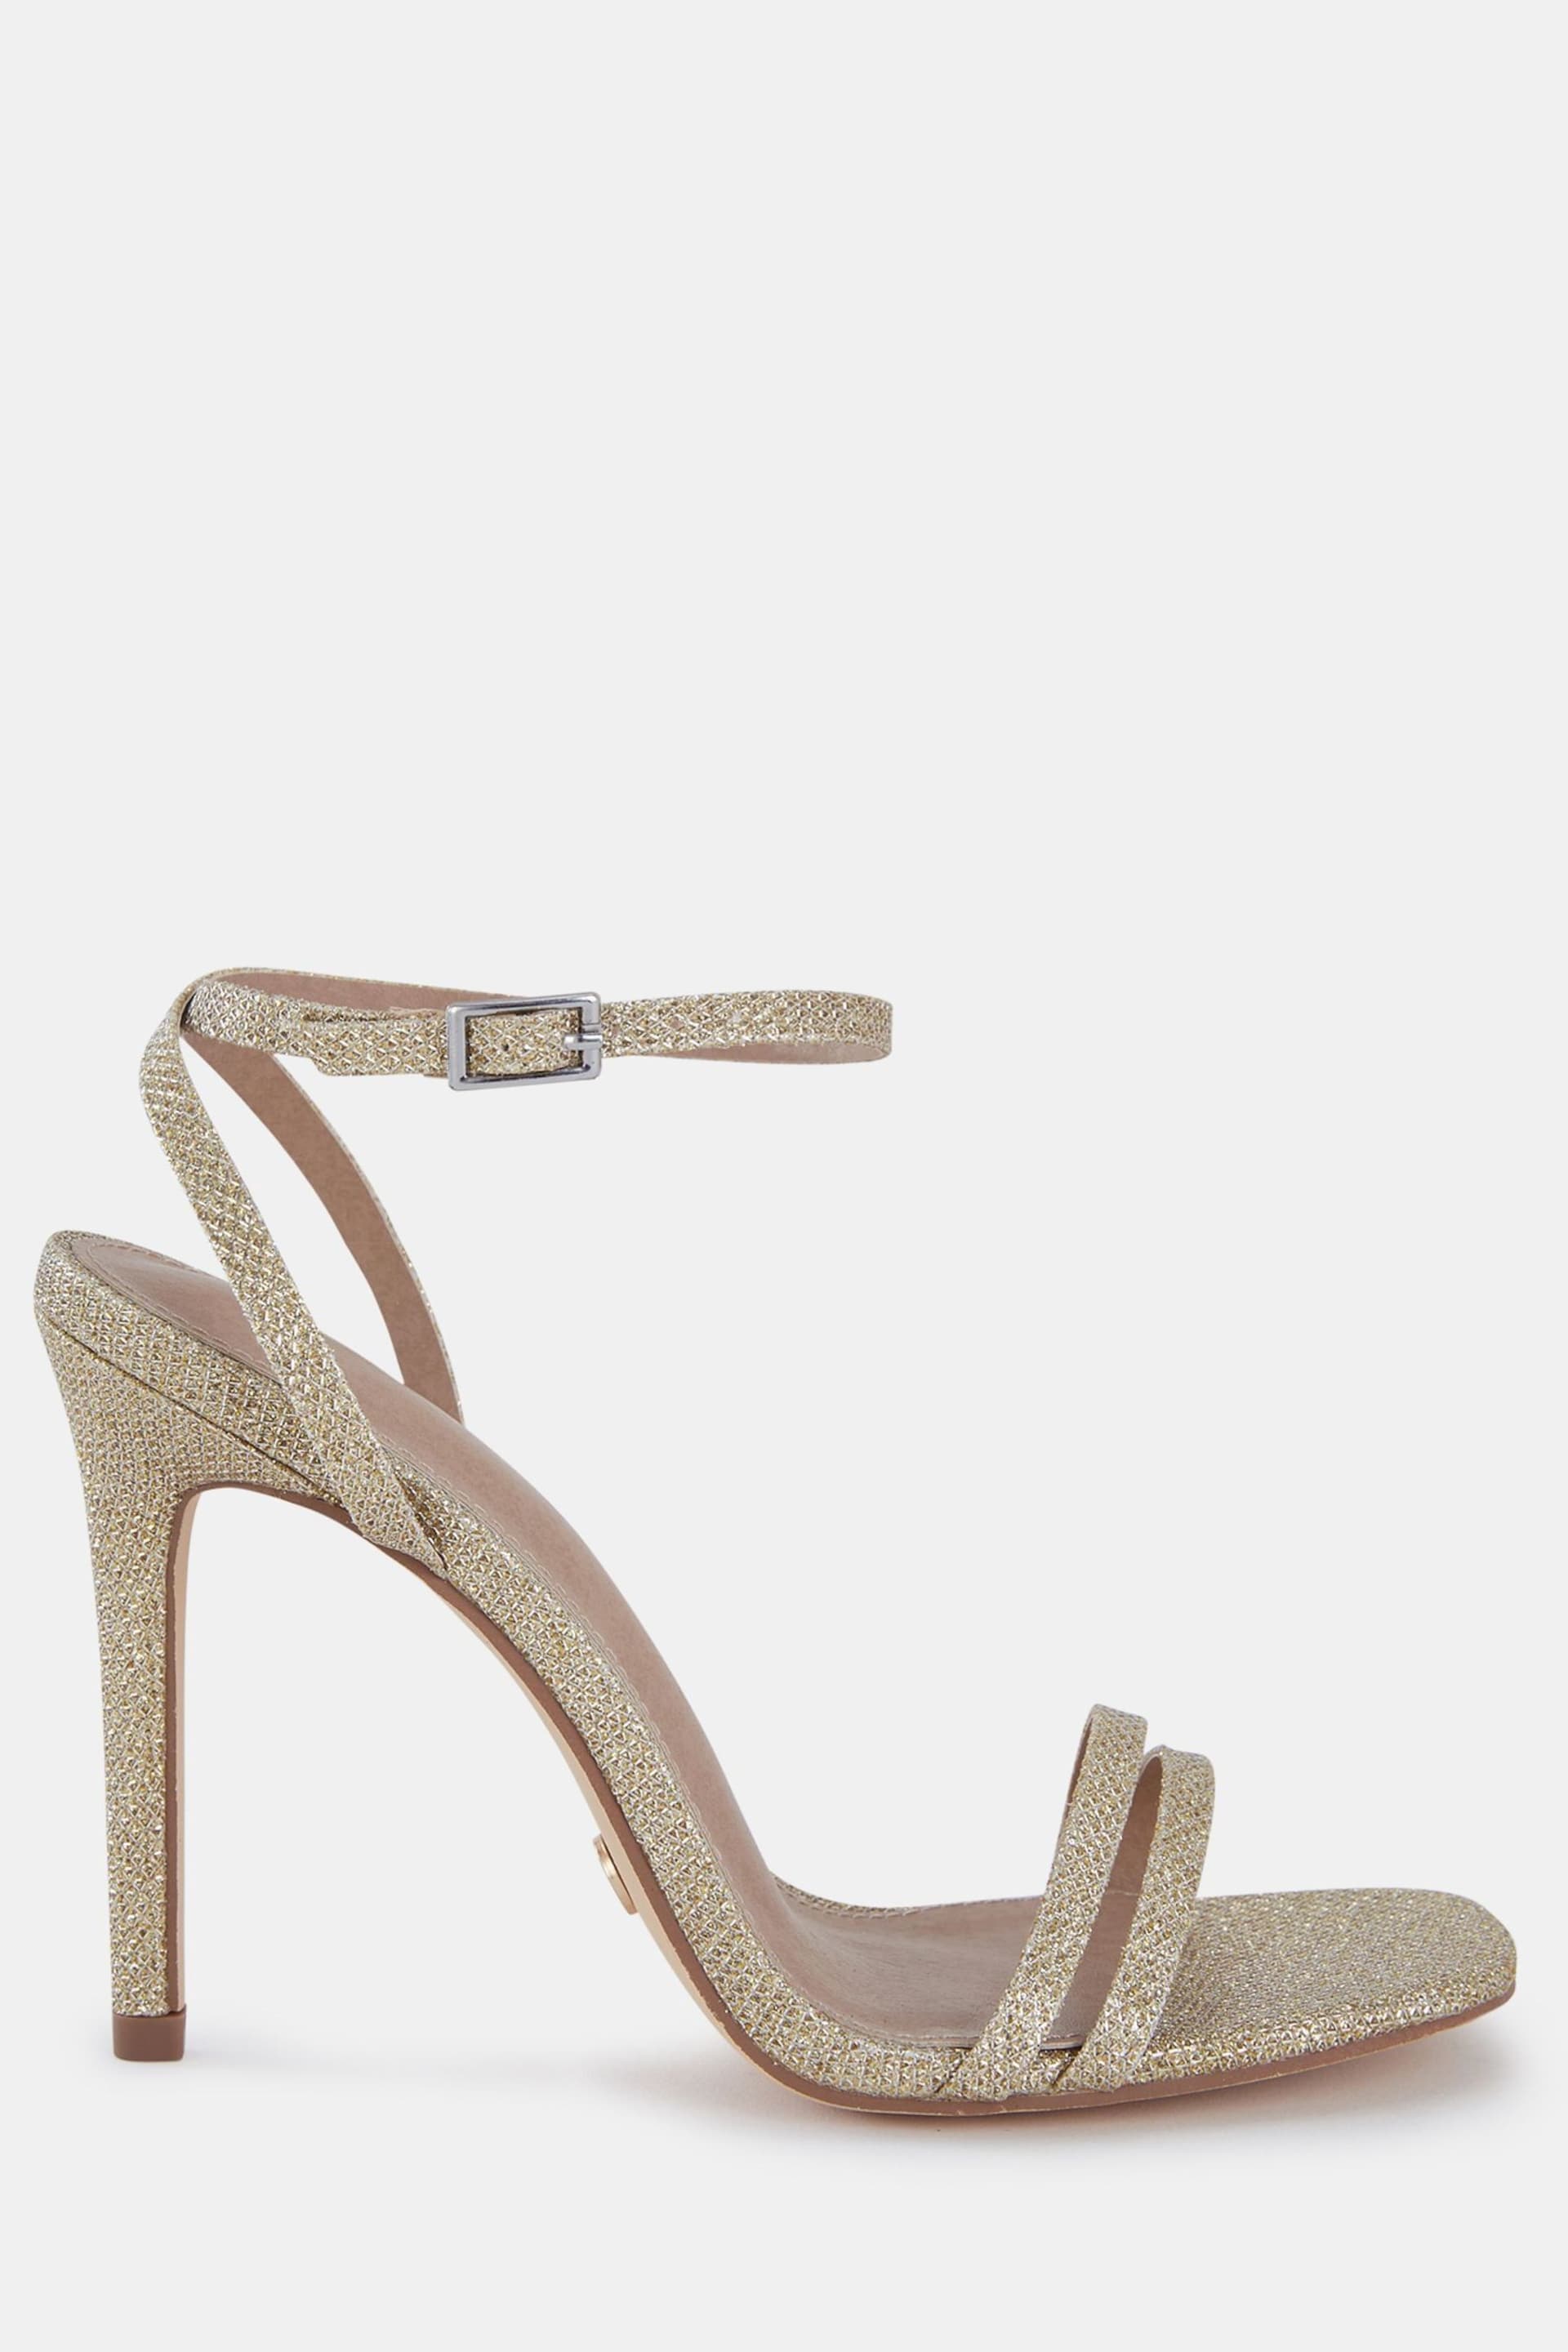 Novo Gold McKenna Strappy Heeled Sandals - Image 2 of 6